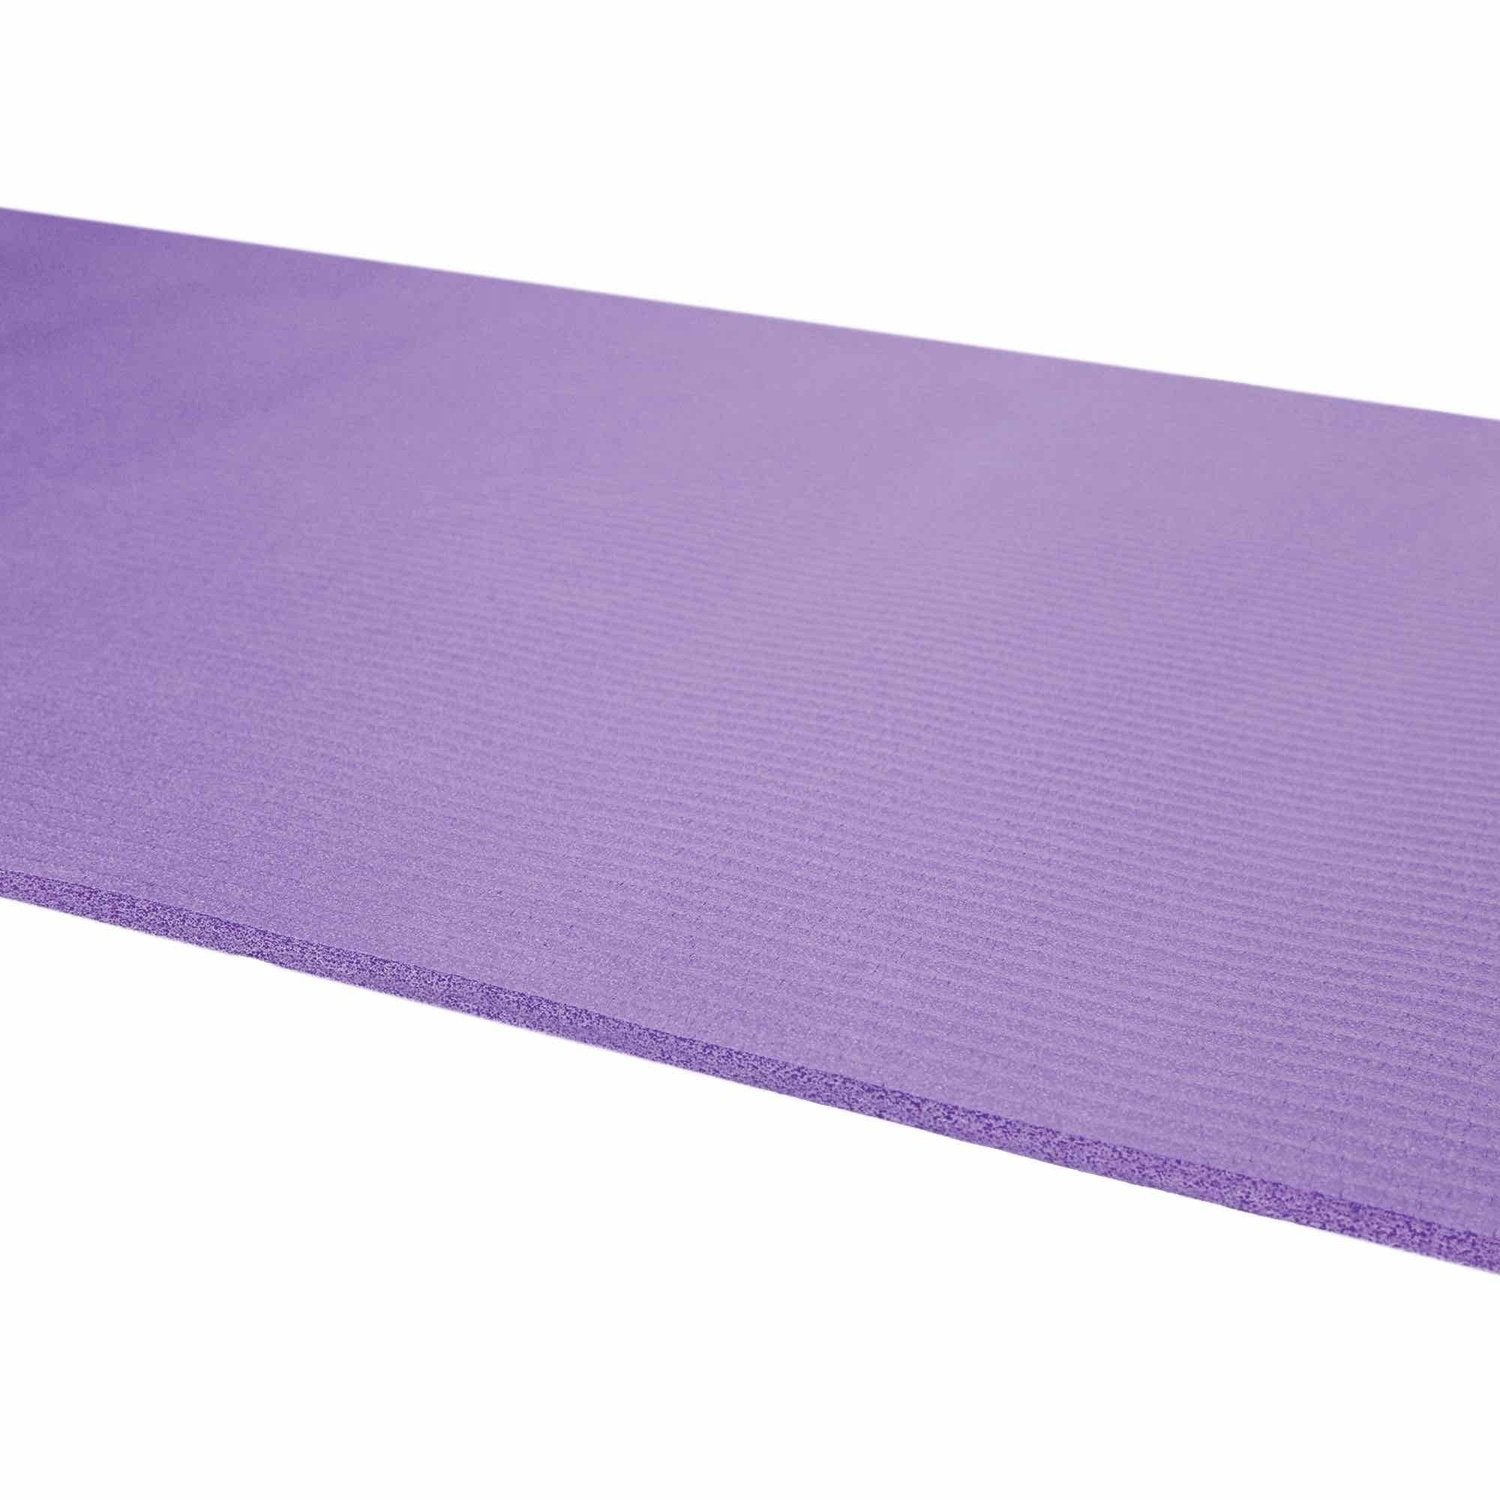 HighPowered Yogamatte (NBR, 183x61x0.8 cm) Violett kaufen bei HighPowered.ch